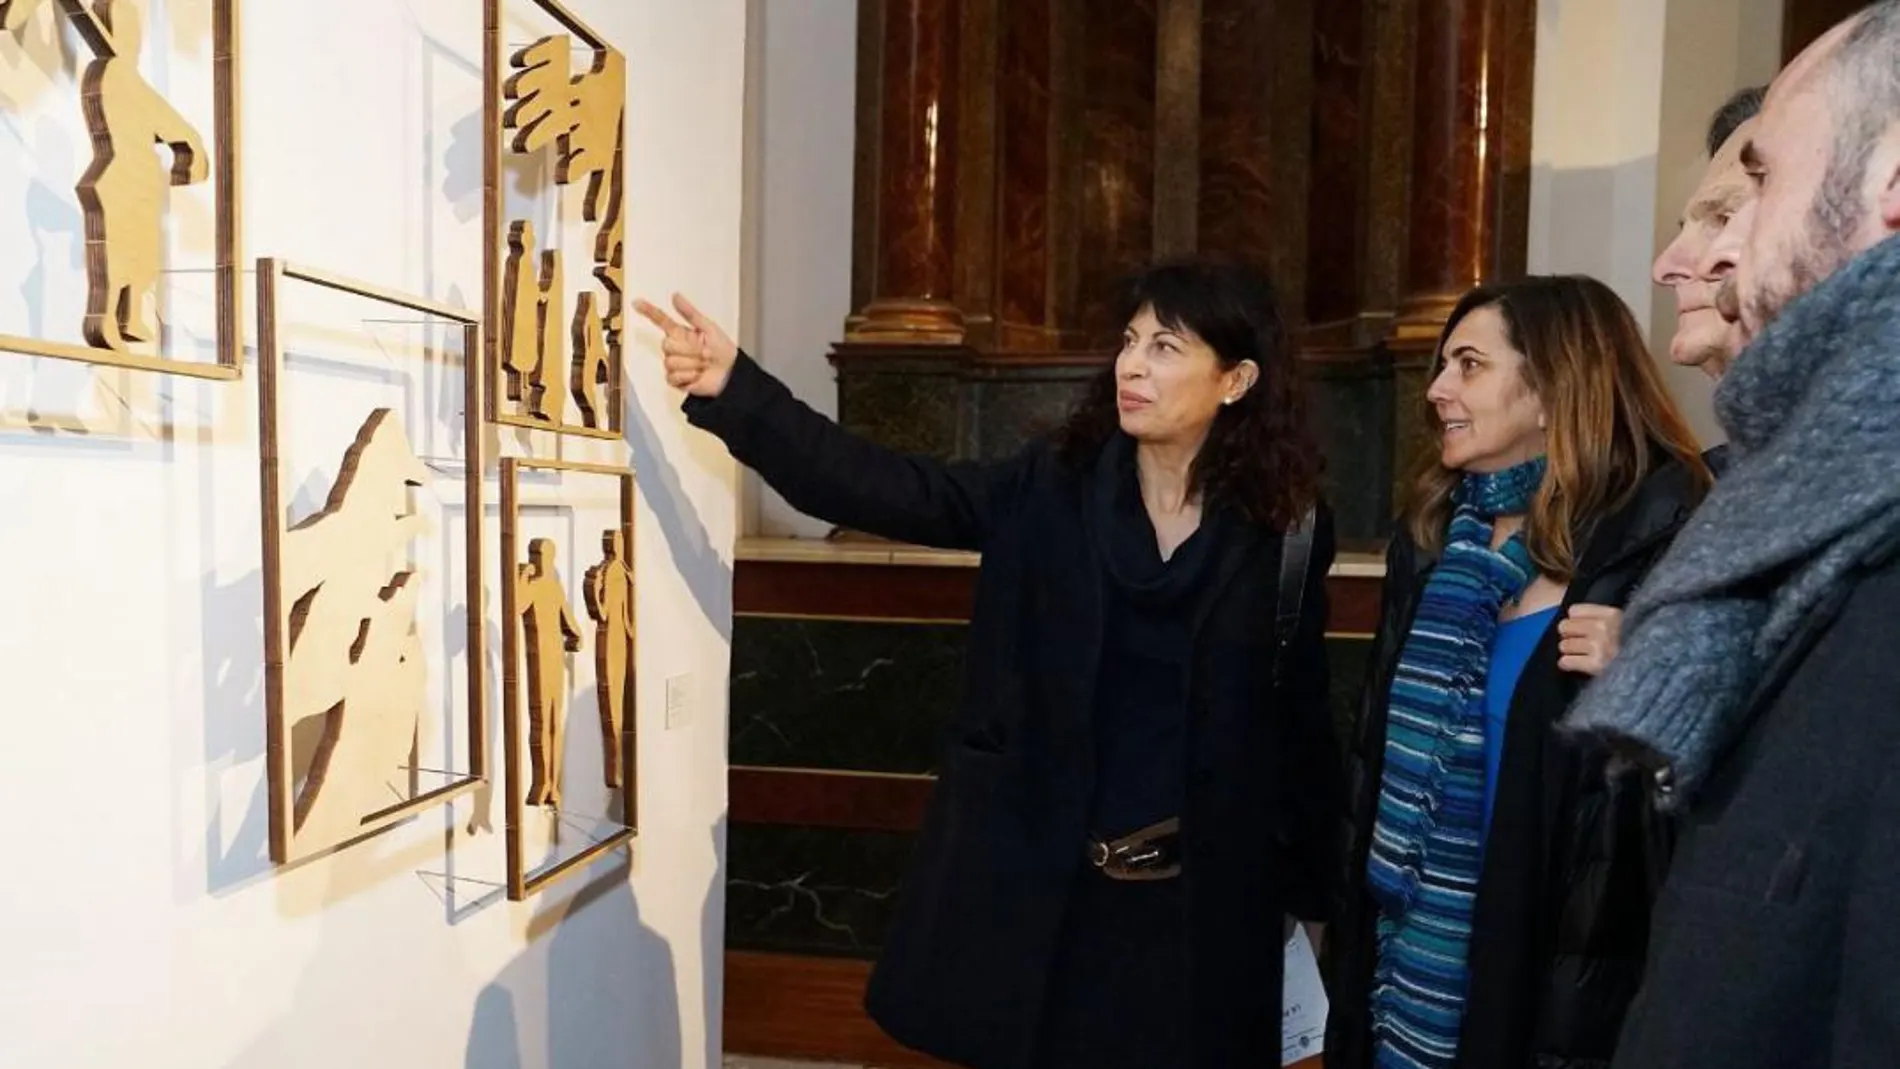 La concejala de Cultura y Turismo, Ana María Redondo, muestra una obra al presidente de la Fundación Ankaria, Ricardo Martí Fluxa, y la comisaria de la muestra, Isabel Elorrieta